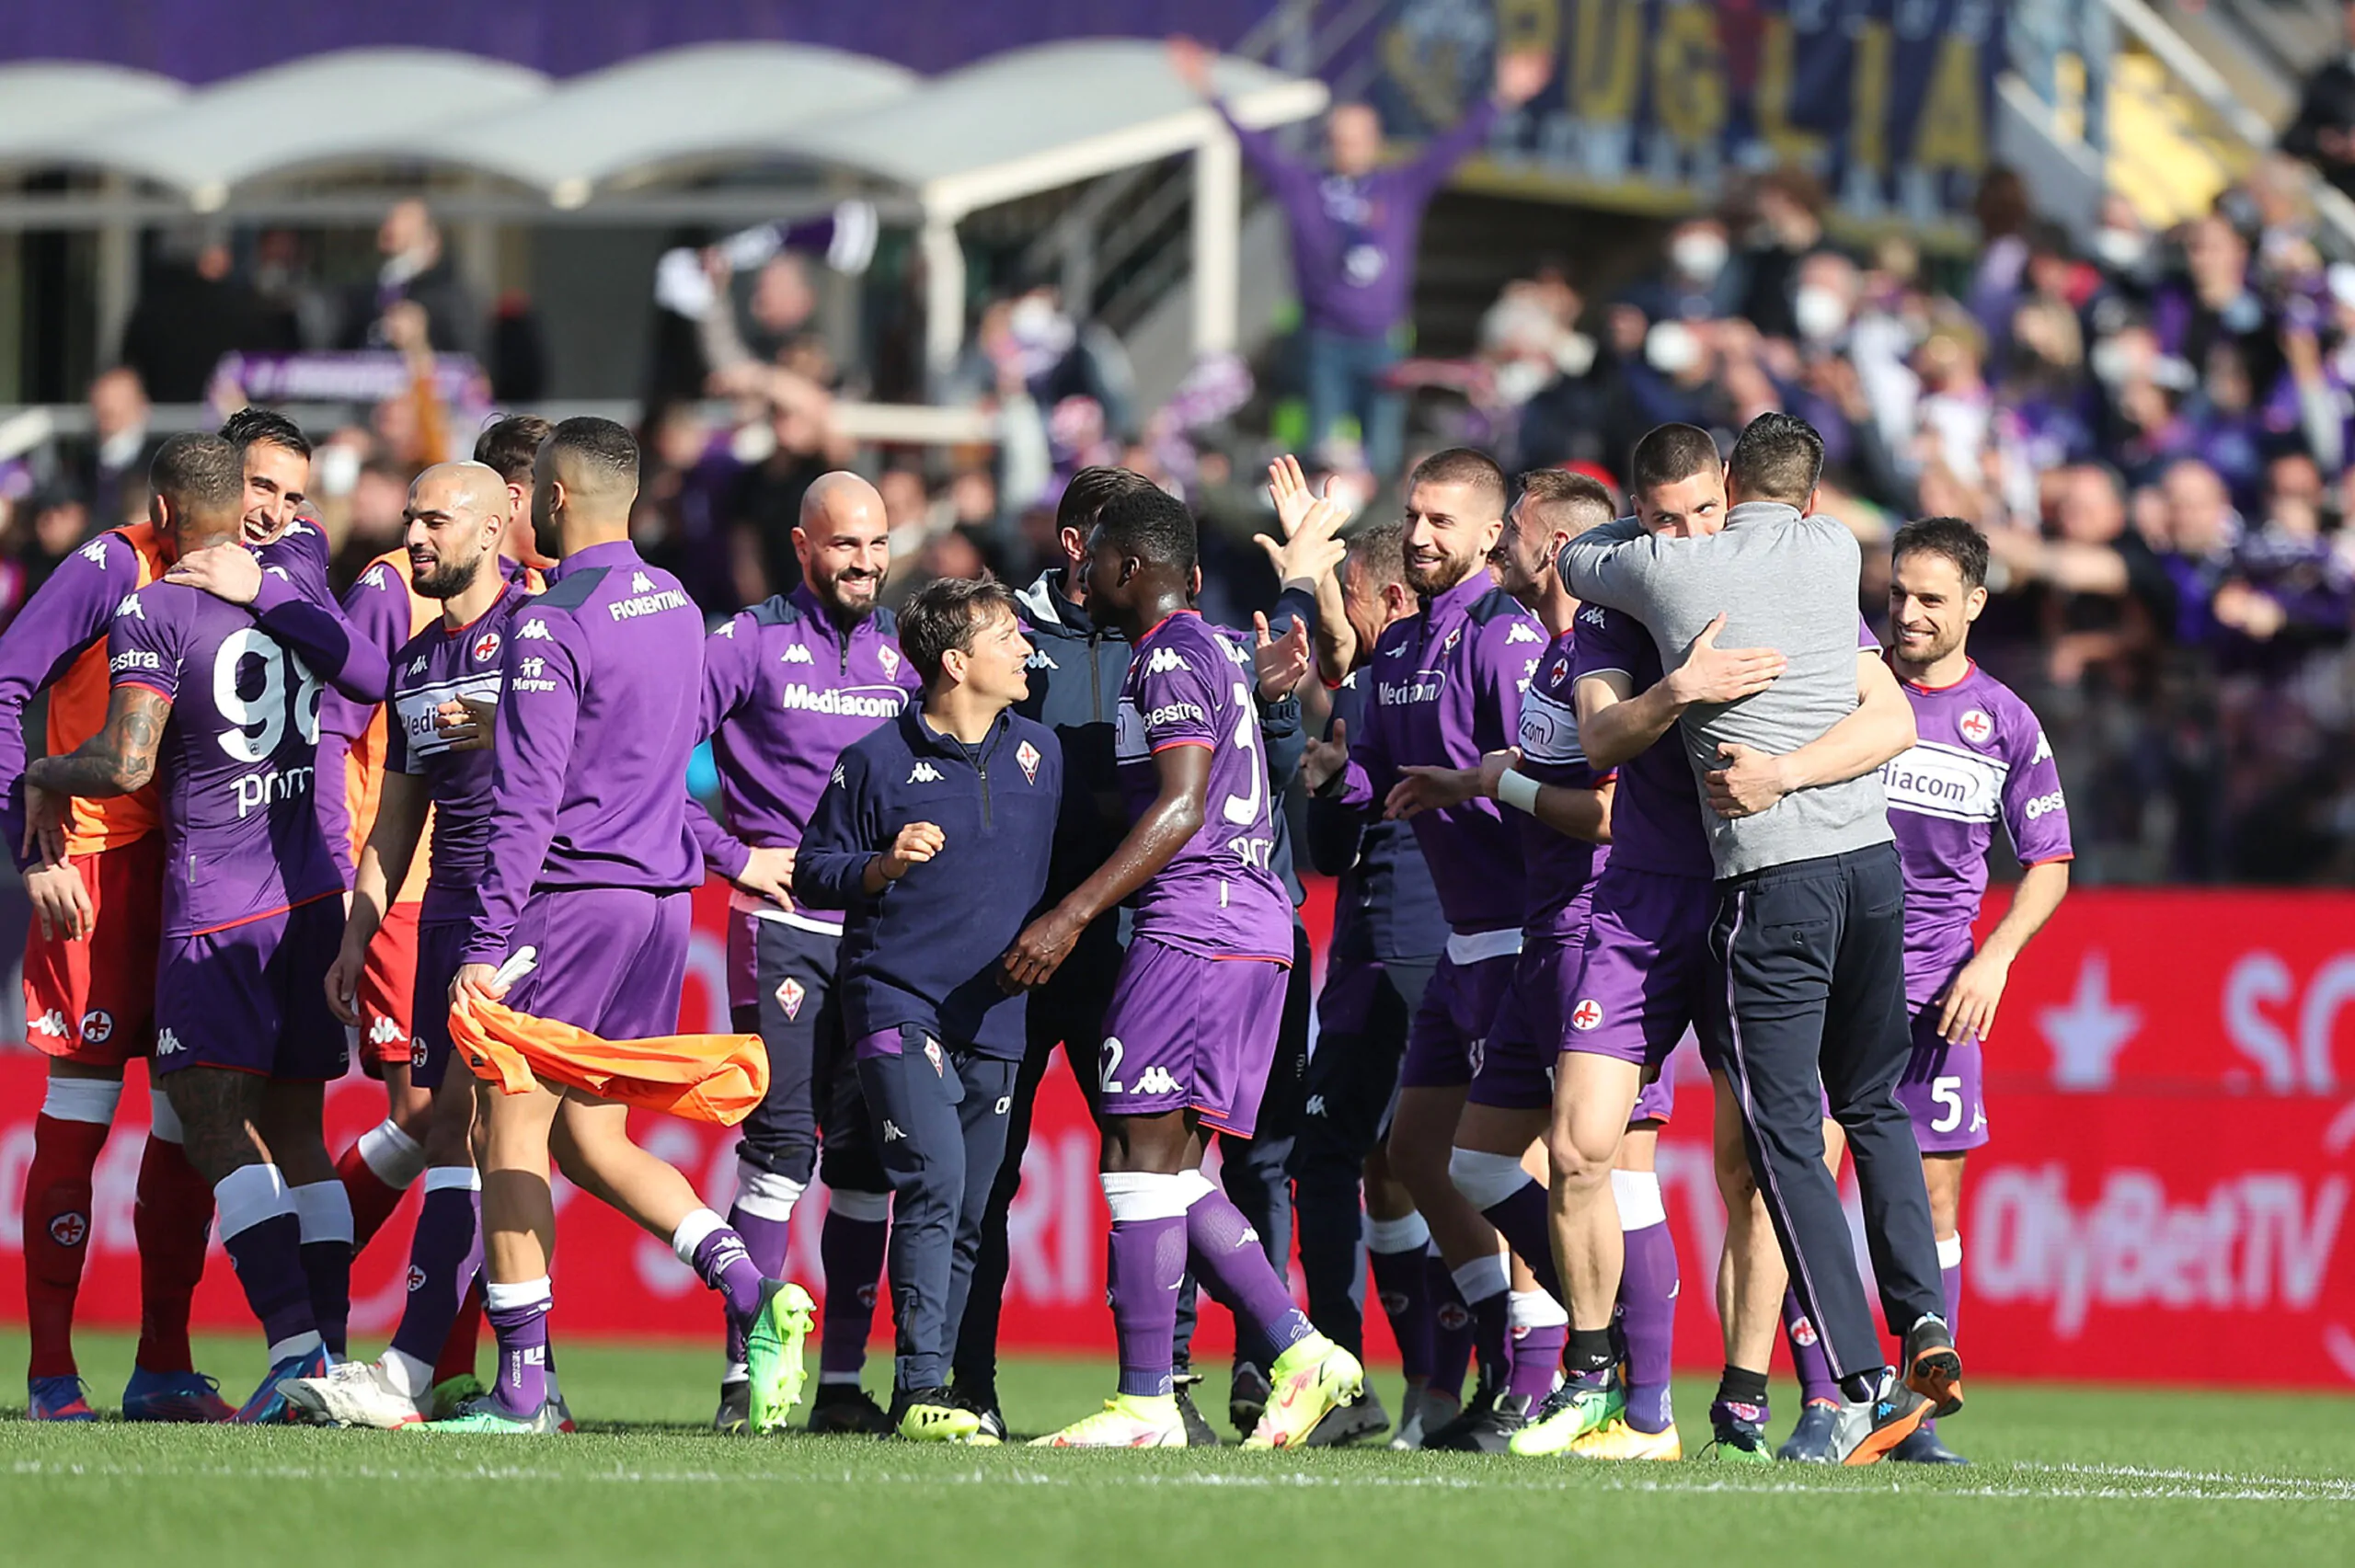 Intrecci di mercato tra Fiorentina e Atalanta: pronto uno scambio!